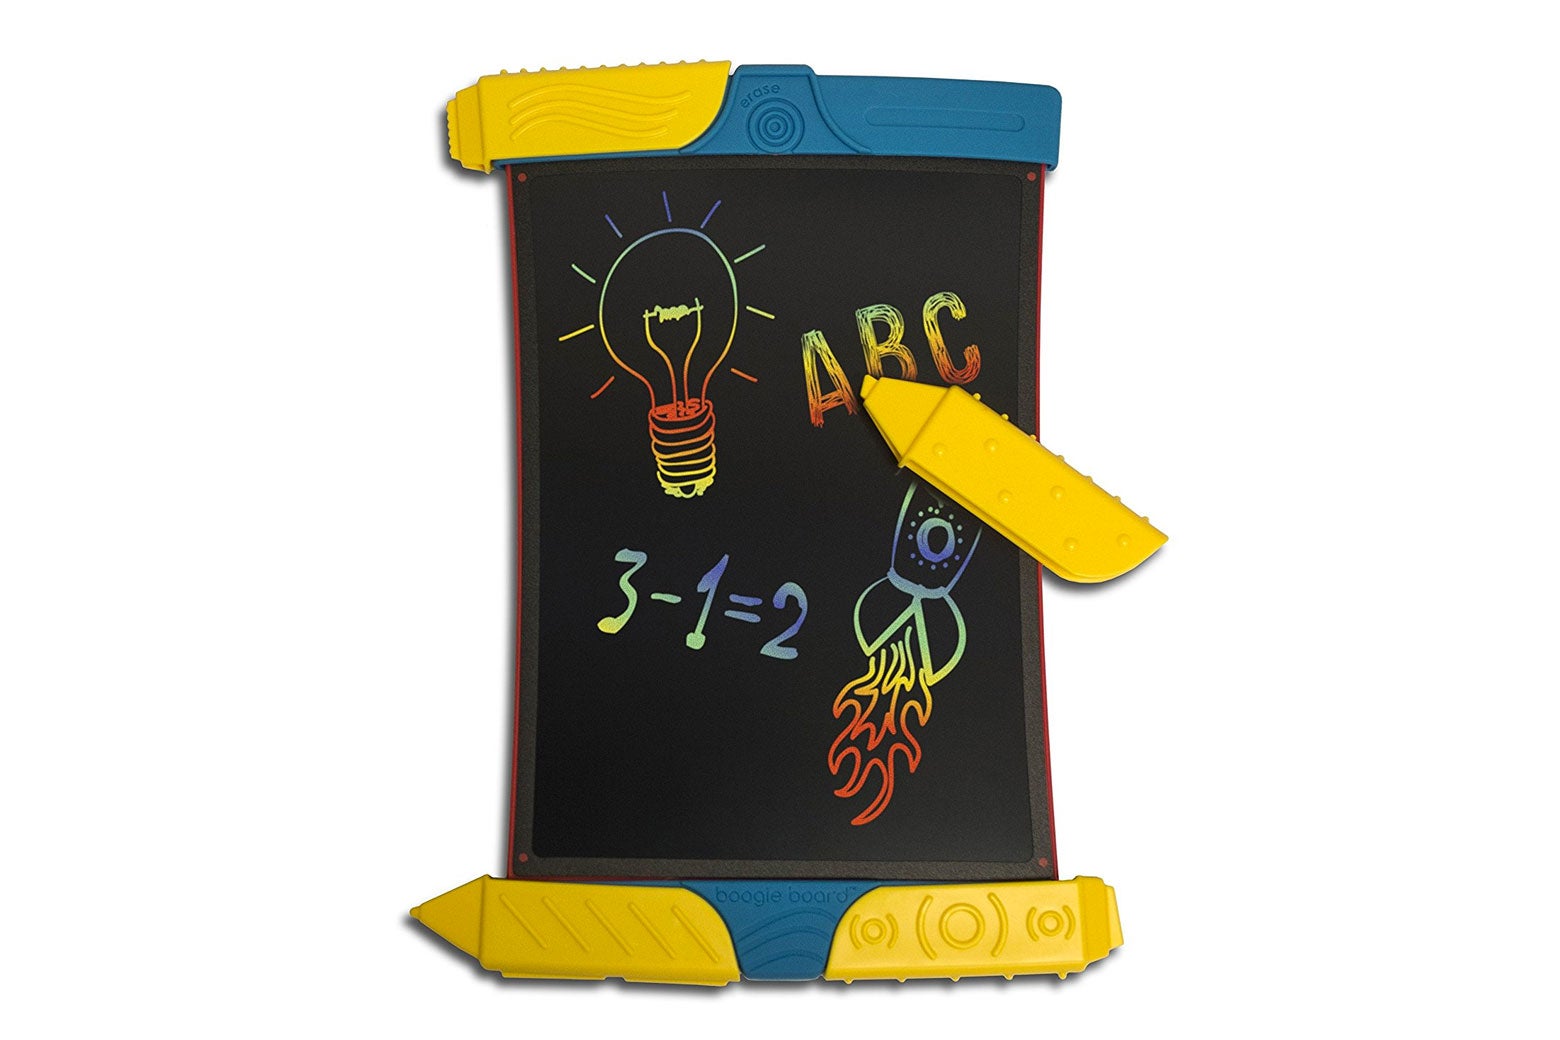 Boogie board erasable doodling tablet.